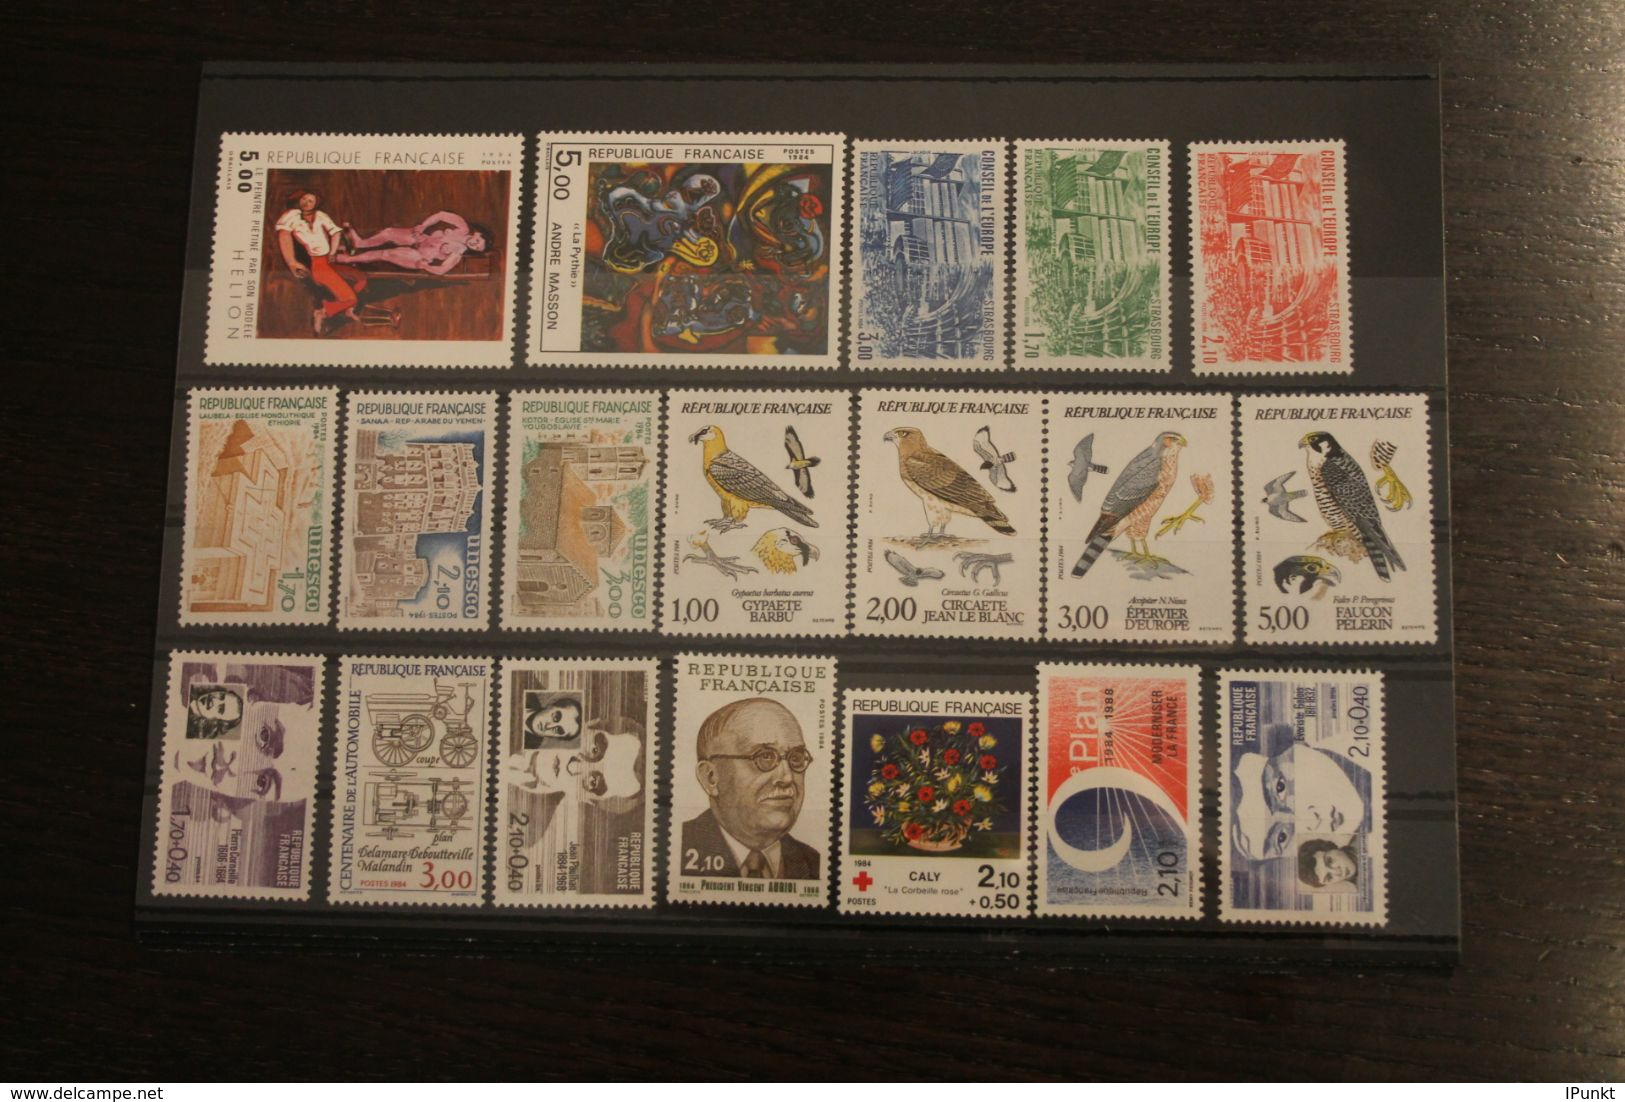 France 1984, Postfrisch, Frankreich Jahrgang 1984, 60 Werte, überkomplett, 4 Steckkarten - 1980-1989